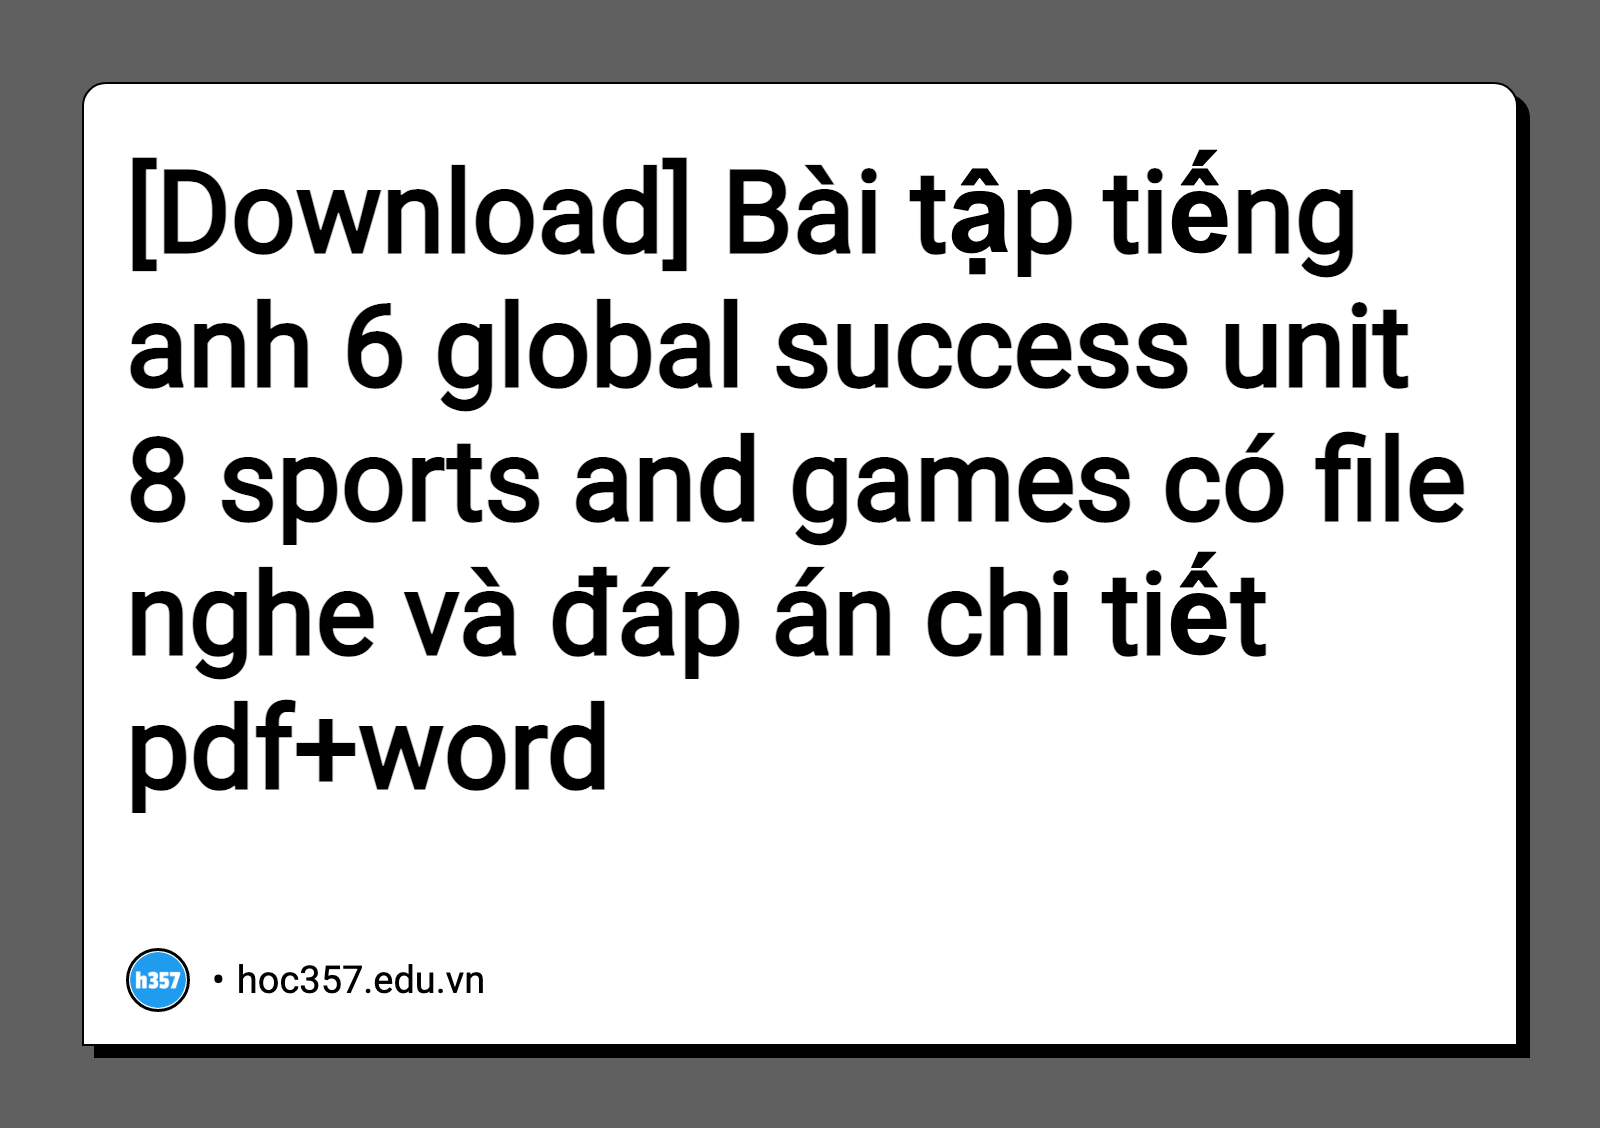 Hình minh họa Bài tập tiếng anh 6 global success unit 8 sports and games có file nghe và đáp án chi tiết